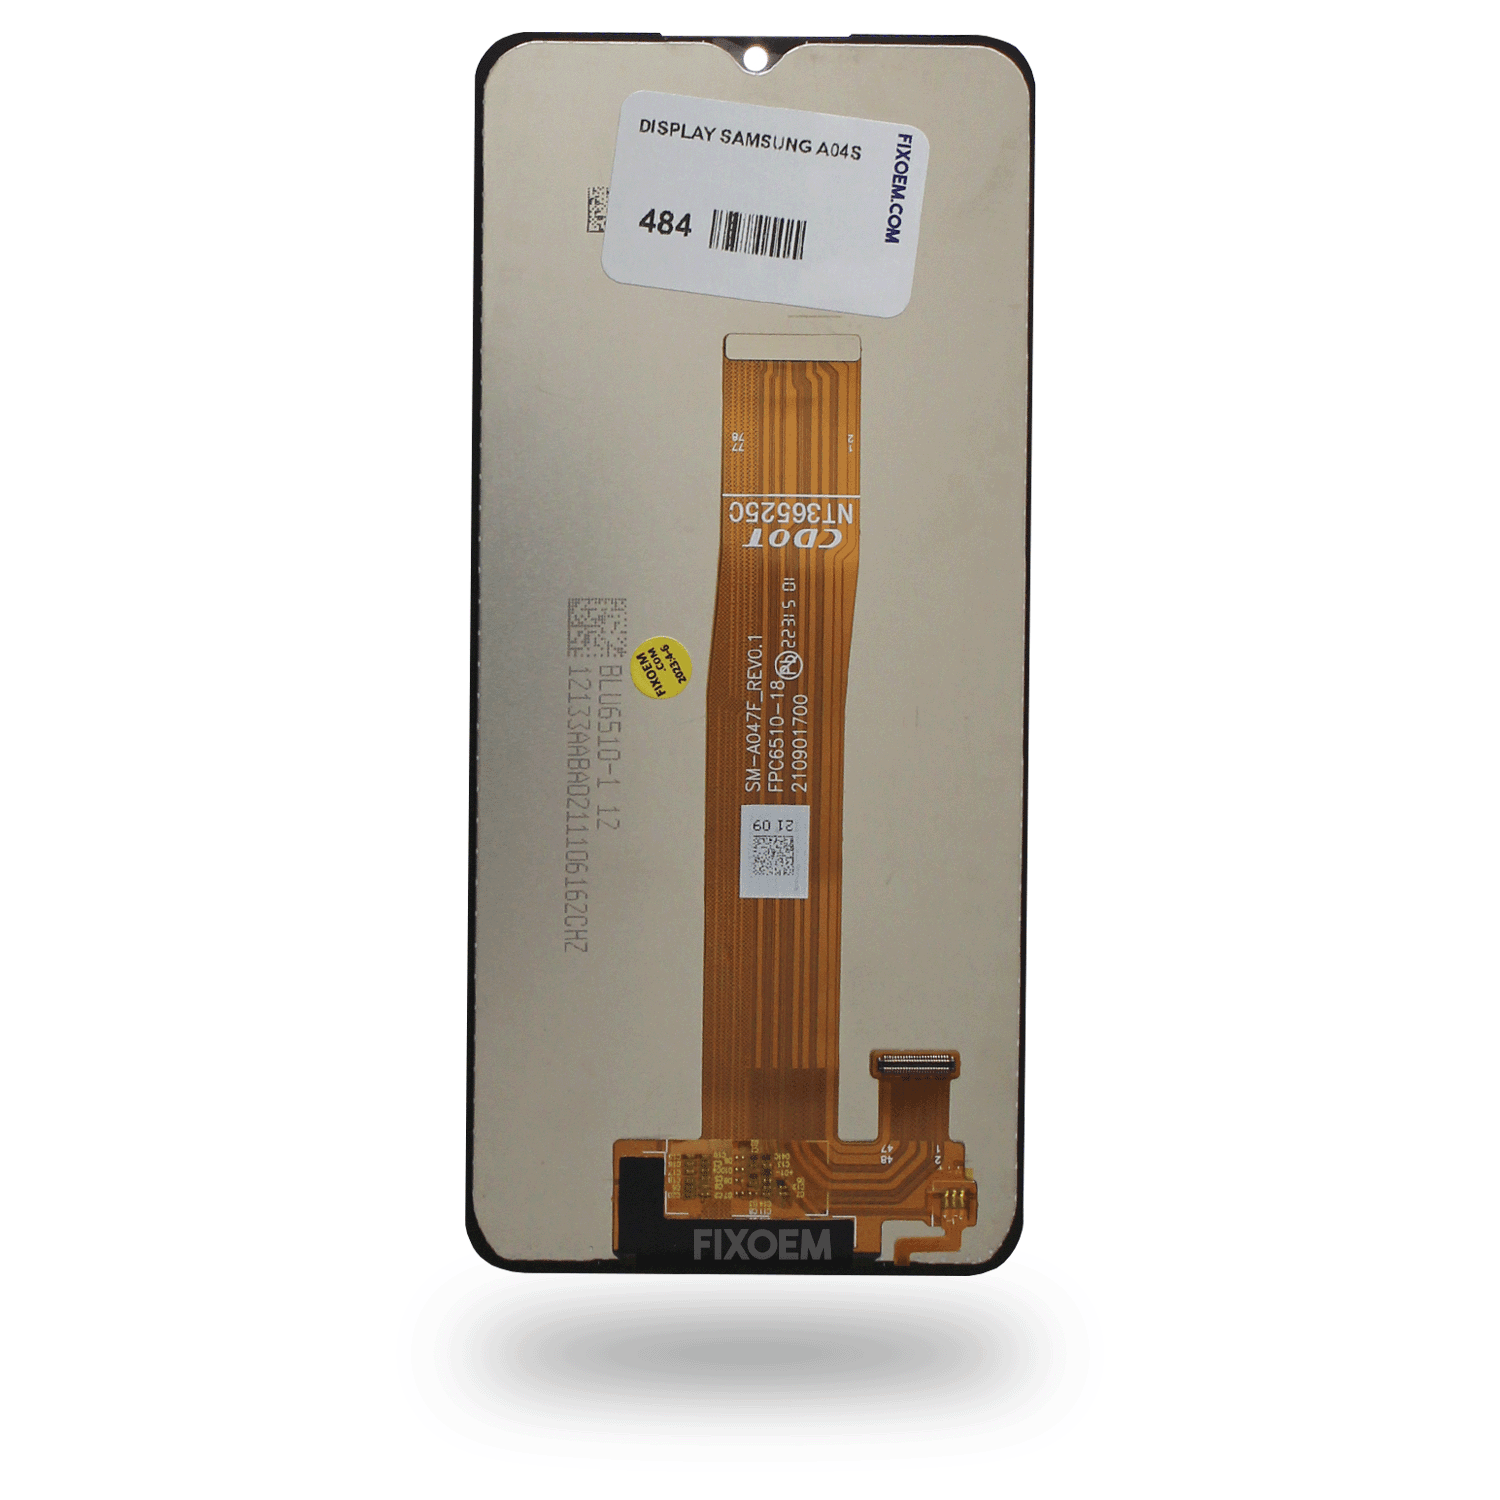 Display Samsung A04S/ A04 Core IPS Sm-a047f Sm-a047m a solo $ 220.00 Refaccion y puestos celulares, refurbish y microelectronica.- FixOEM